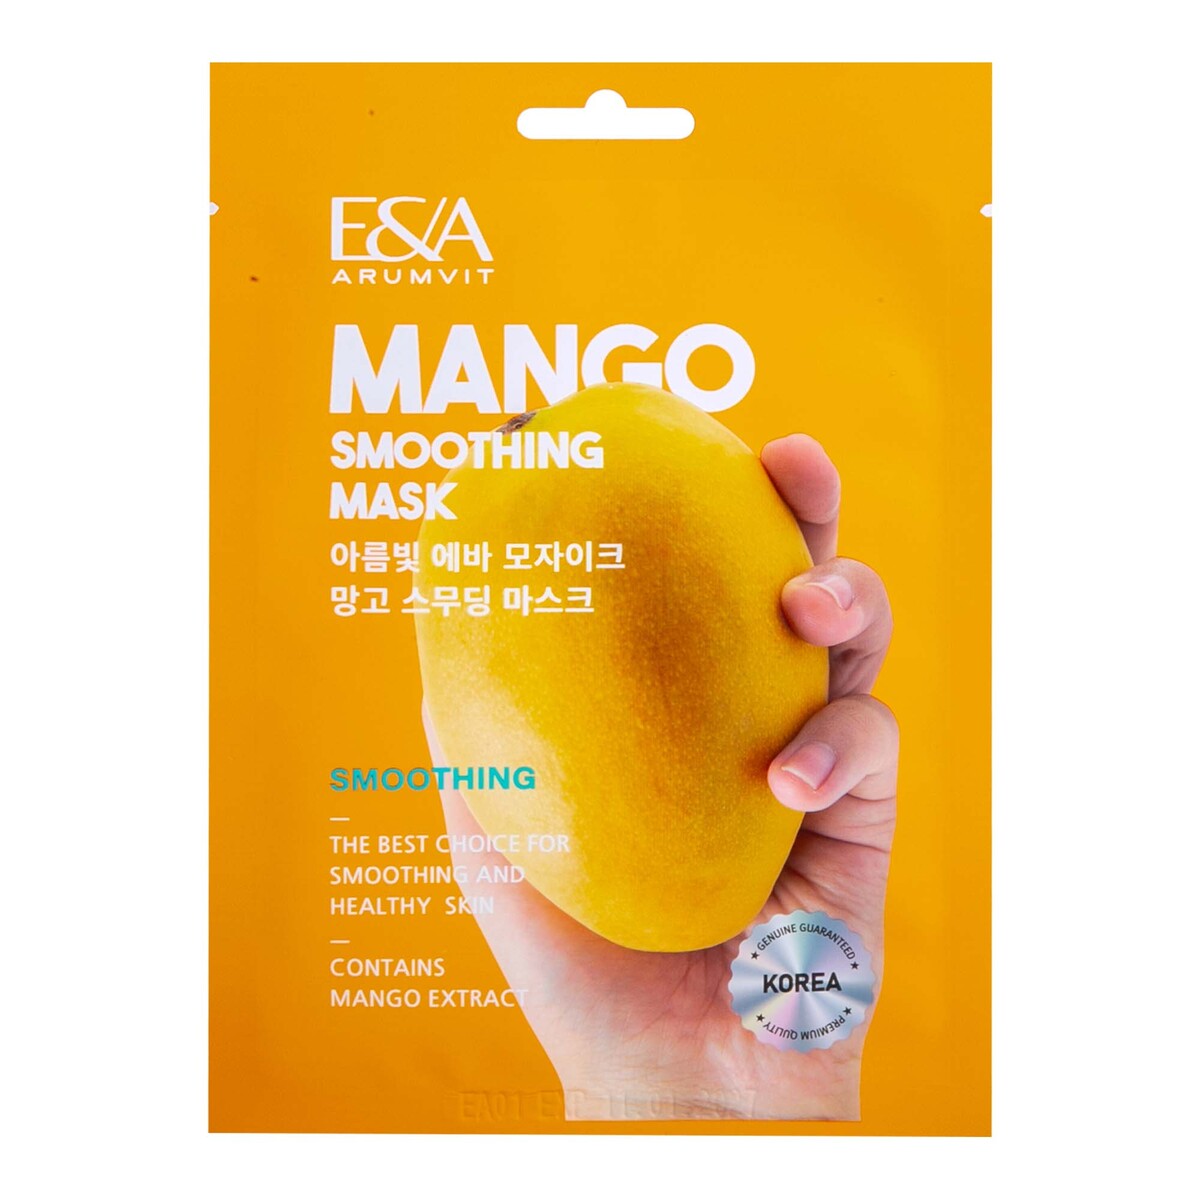 Arumvit Eva Mosaic Mango Smoothing Mask, 25 g